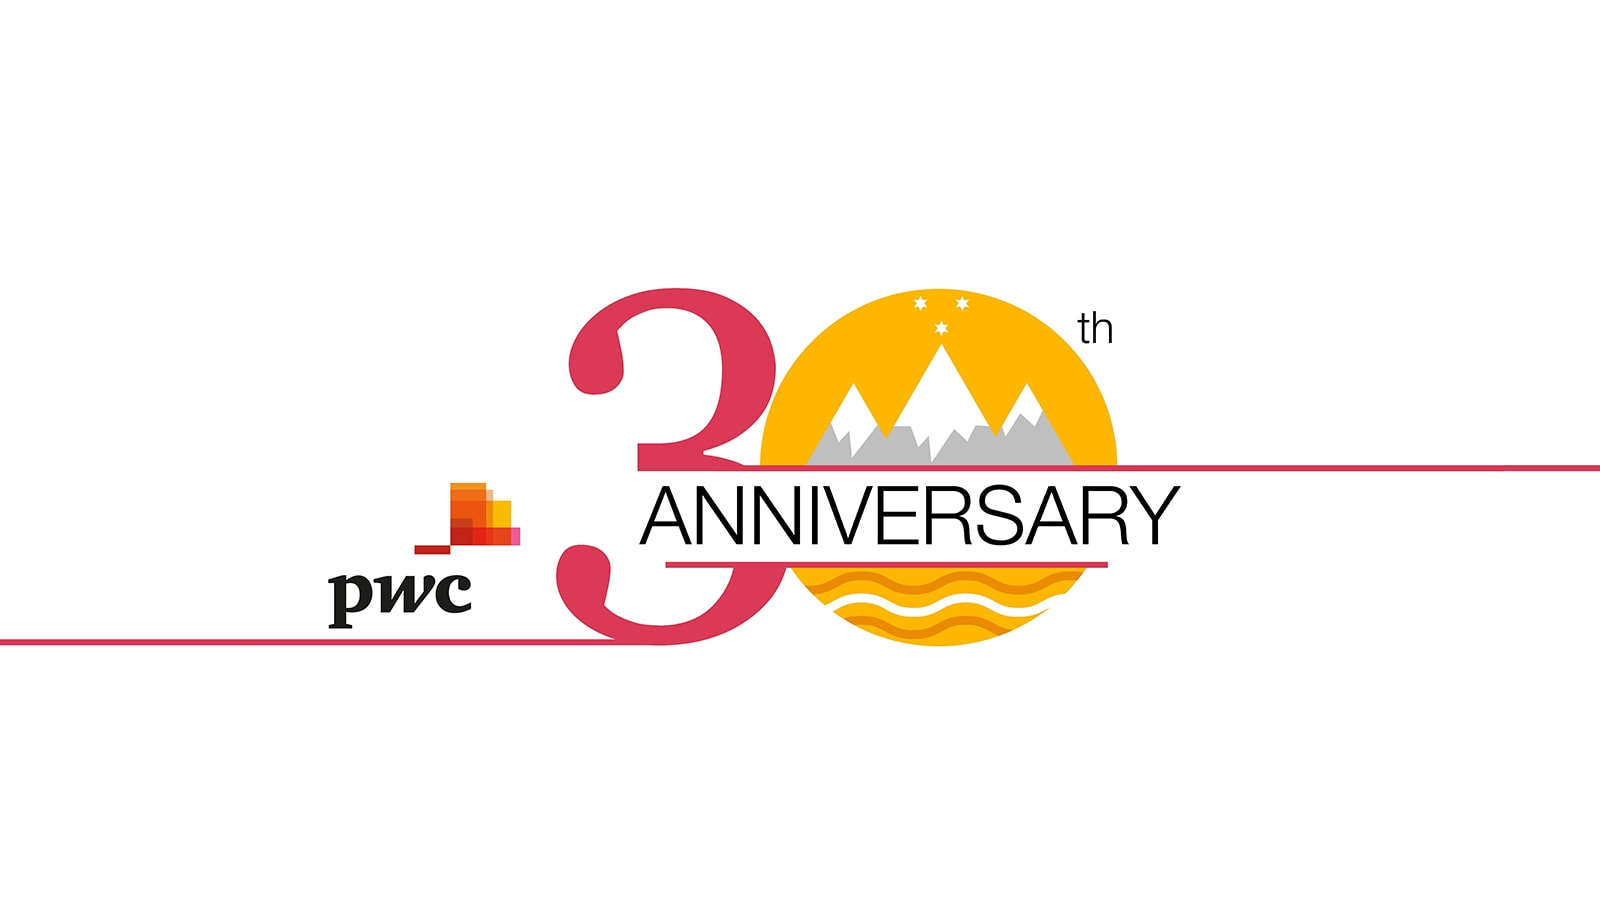 Družba PwC v Sloveniji že 30 let!